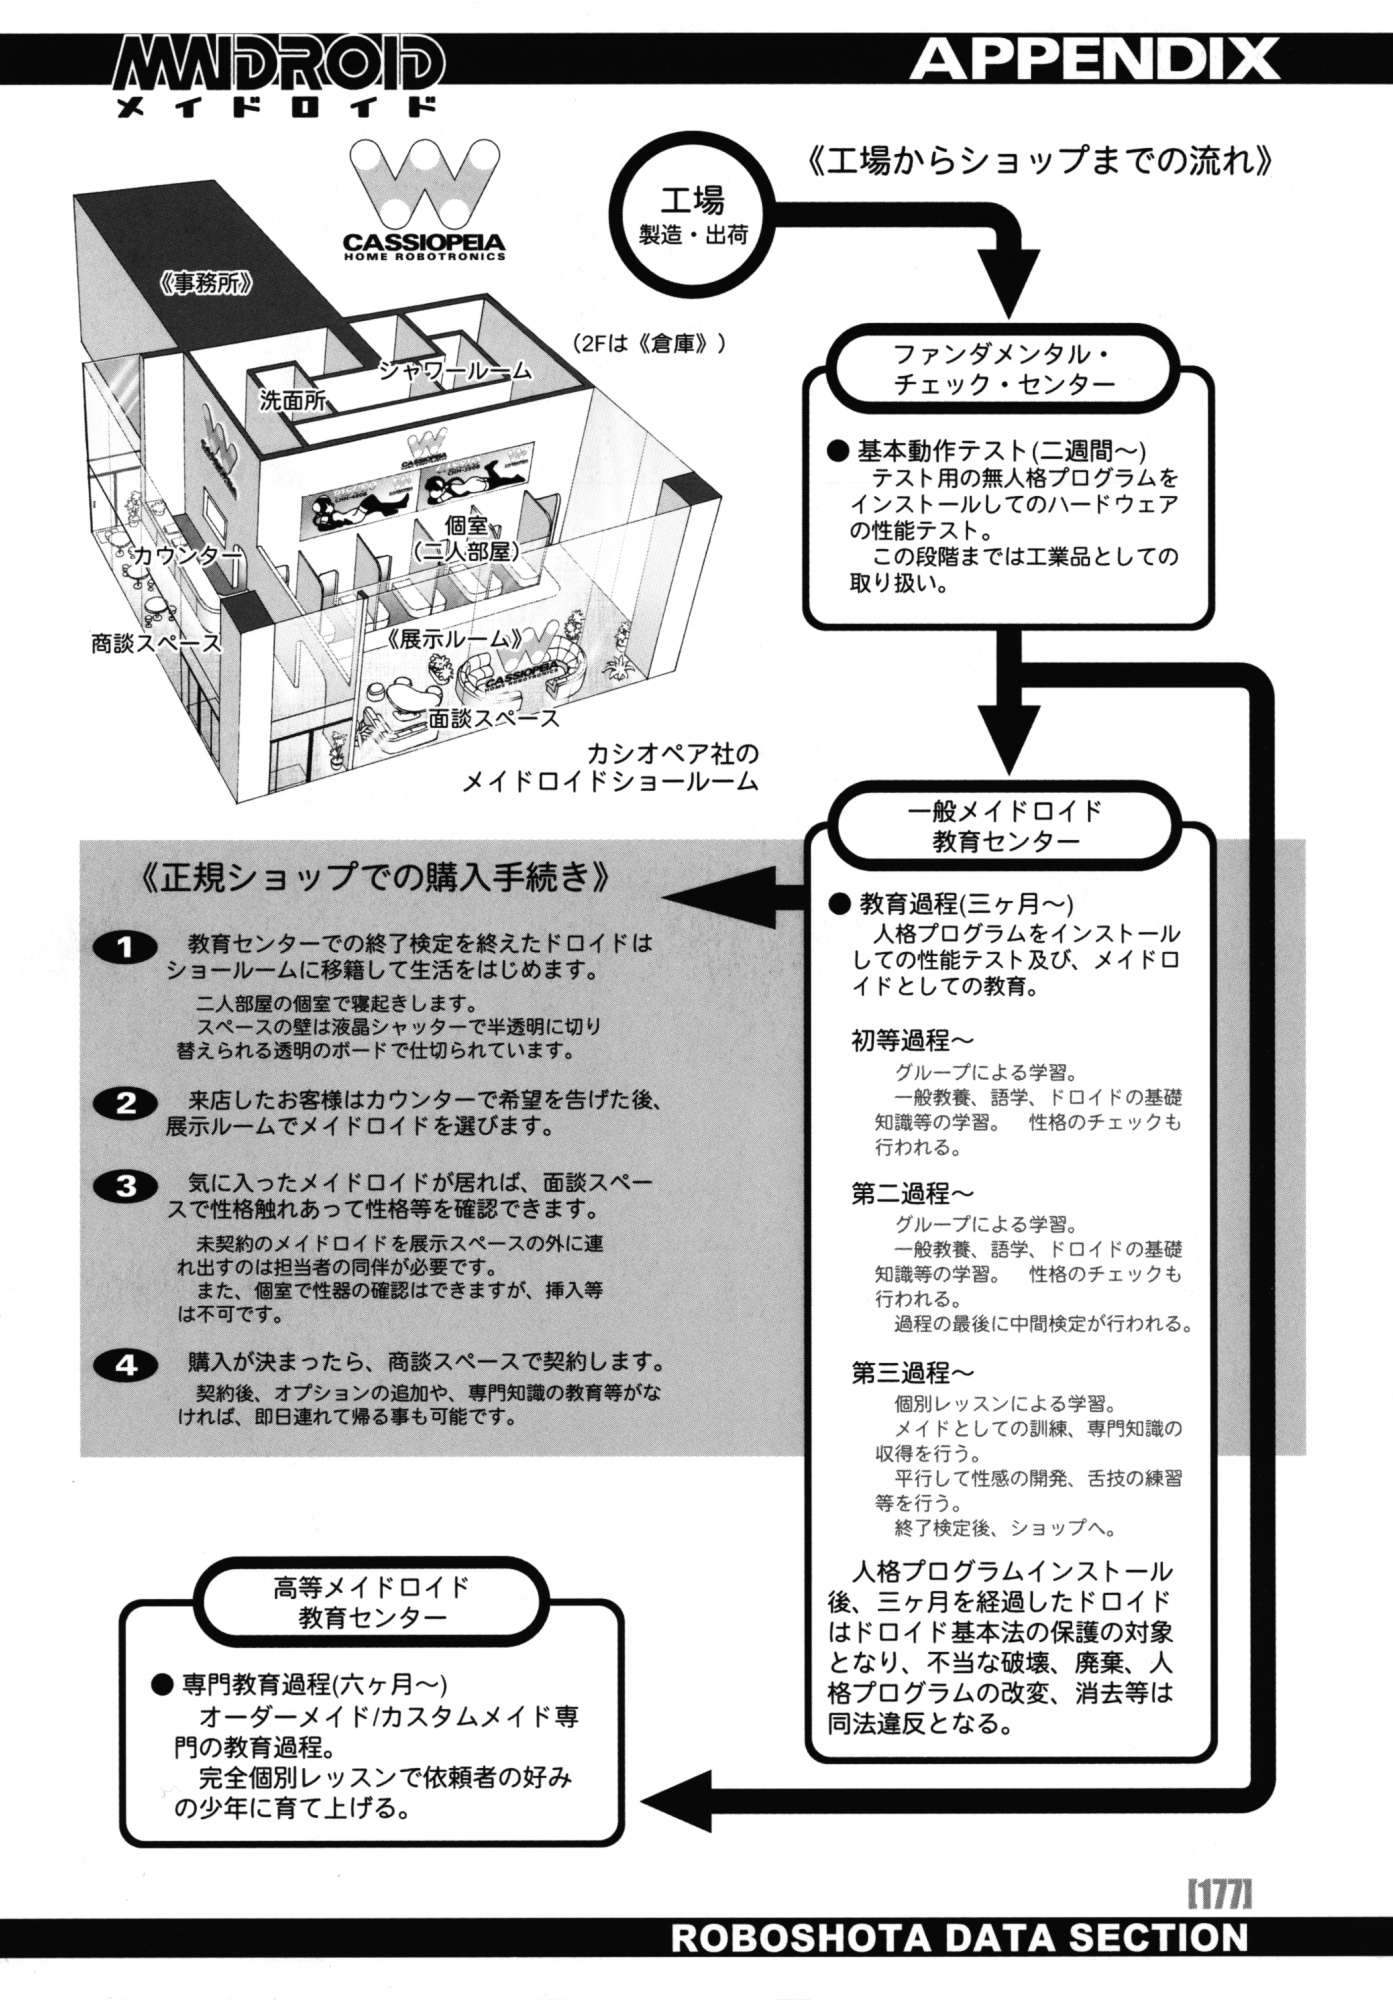 PO-JU WORKS - Po-Ju Shota Shougyoushi Zensakuhinshuu 1998-2009 Chapter-15 - 31